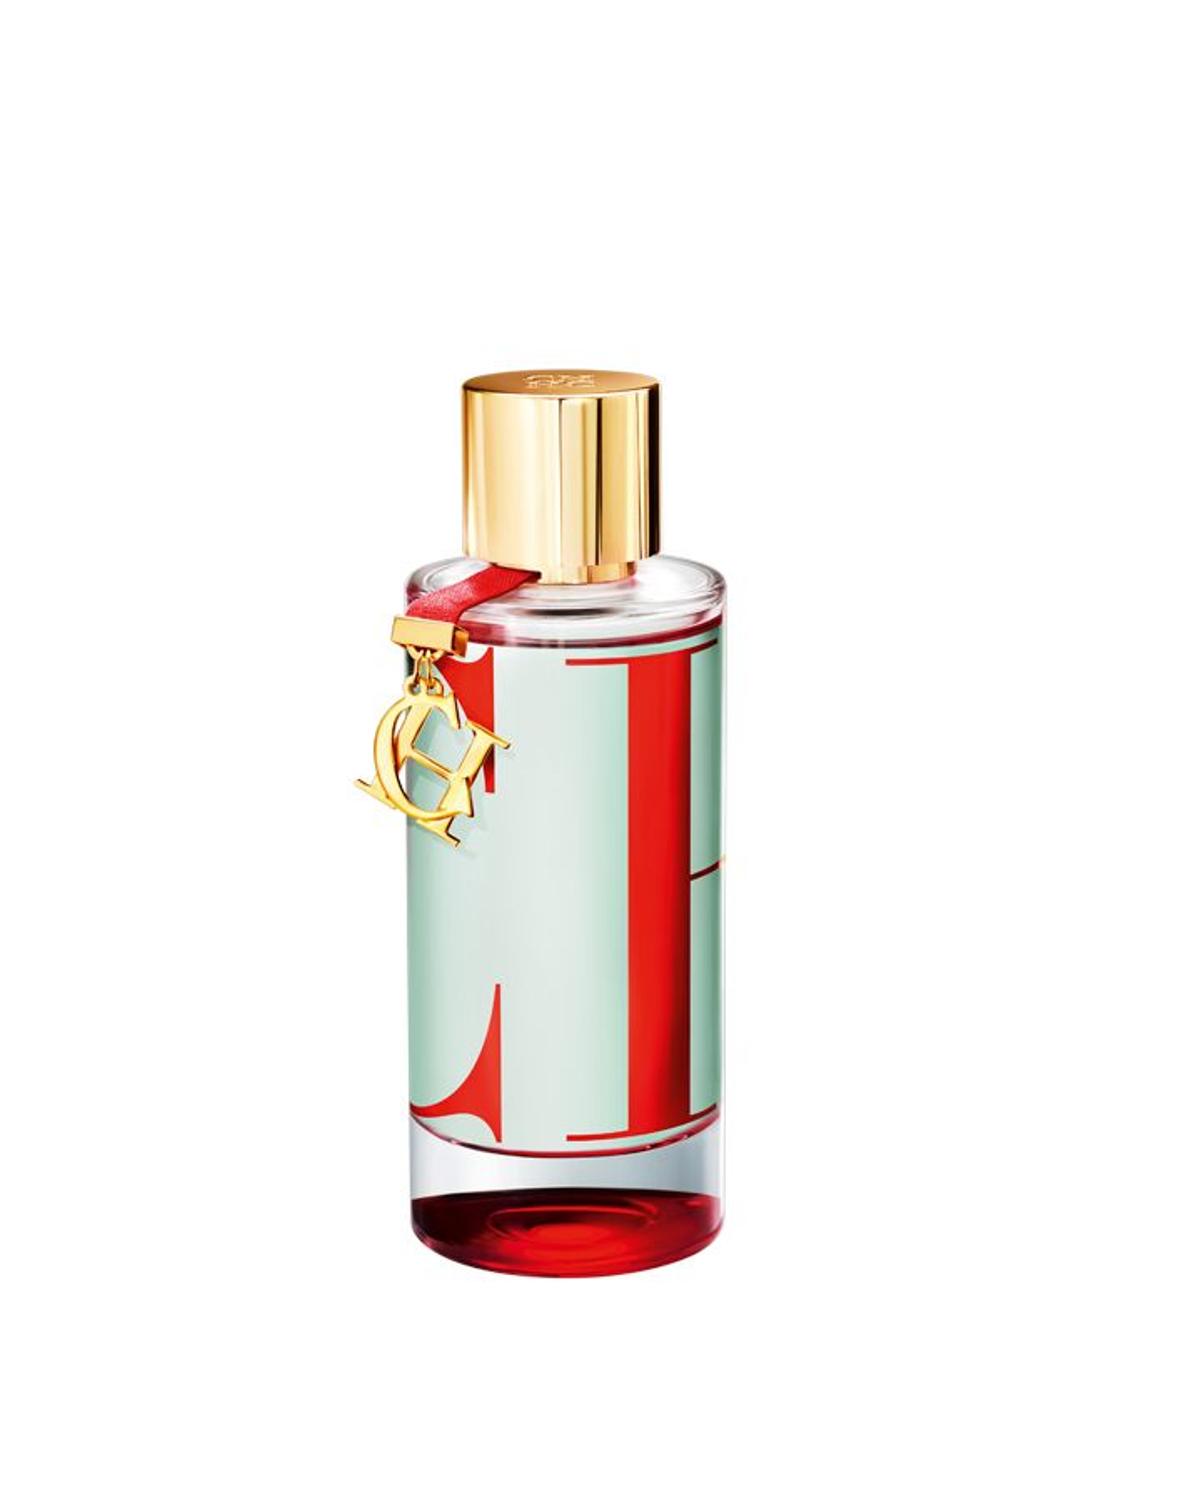 Neceser de ciudad: Perfume de Carolina Herrera